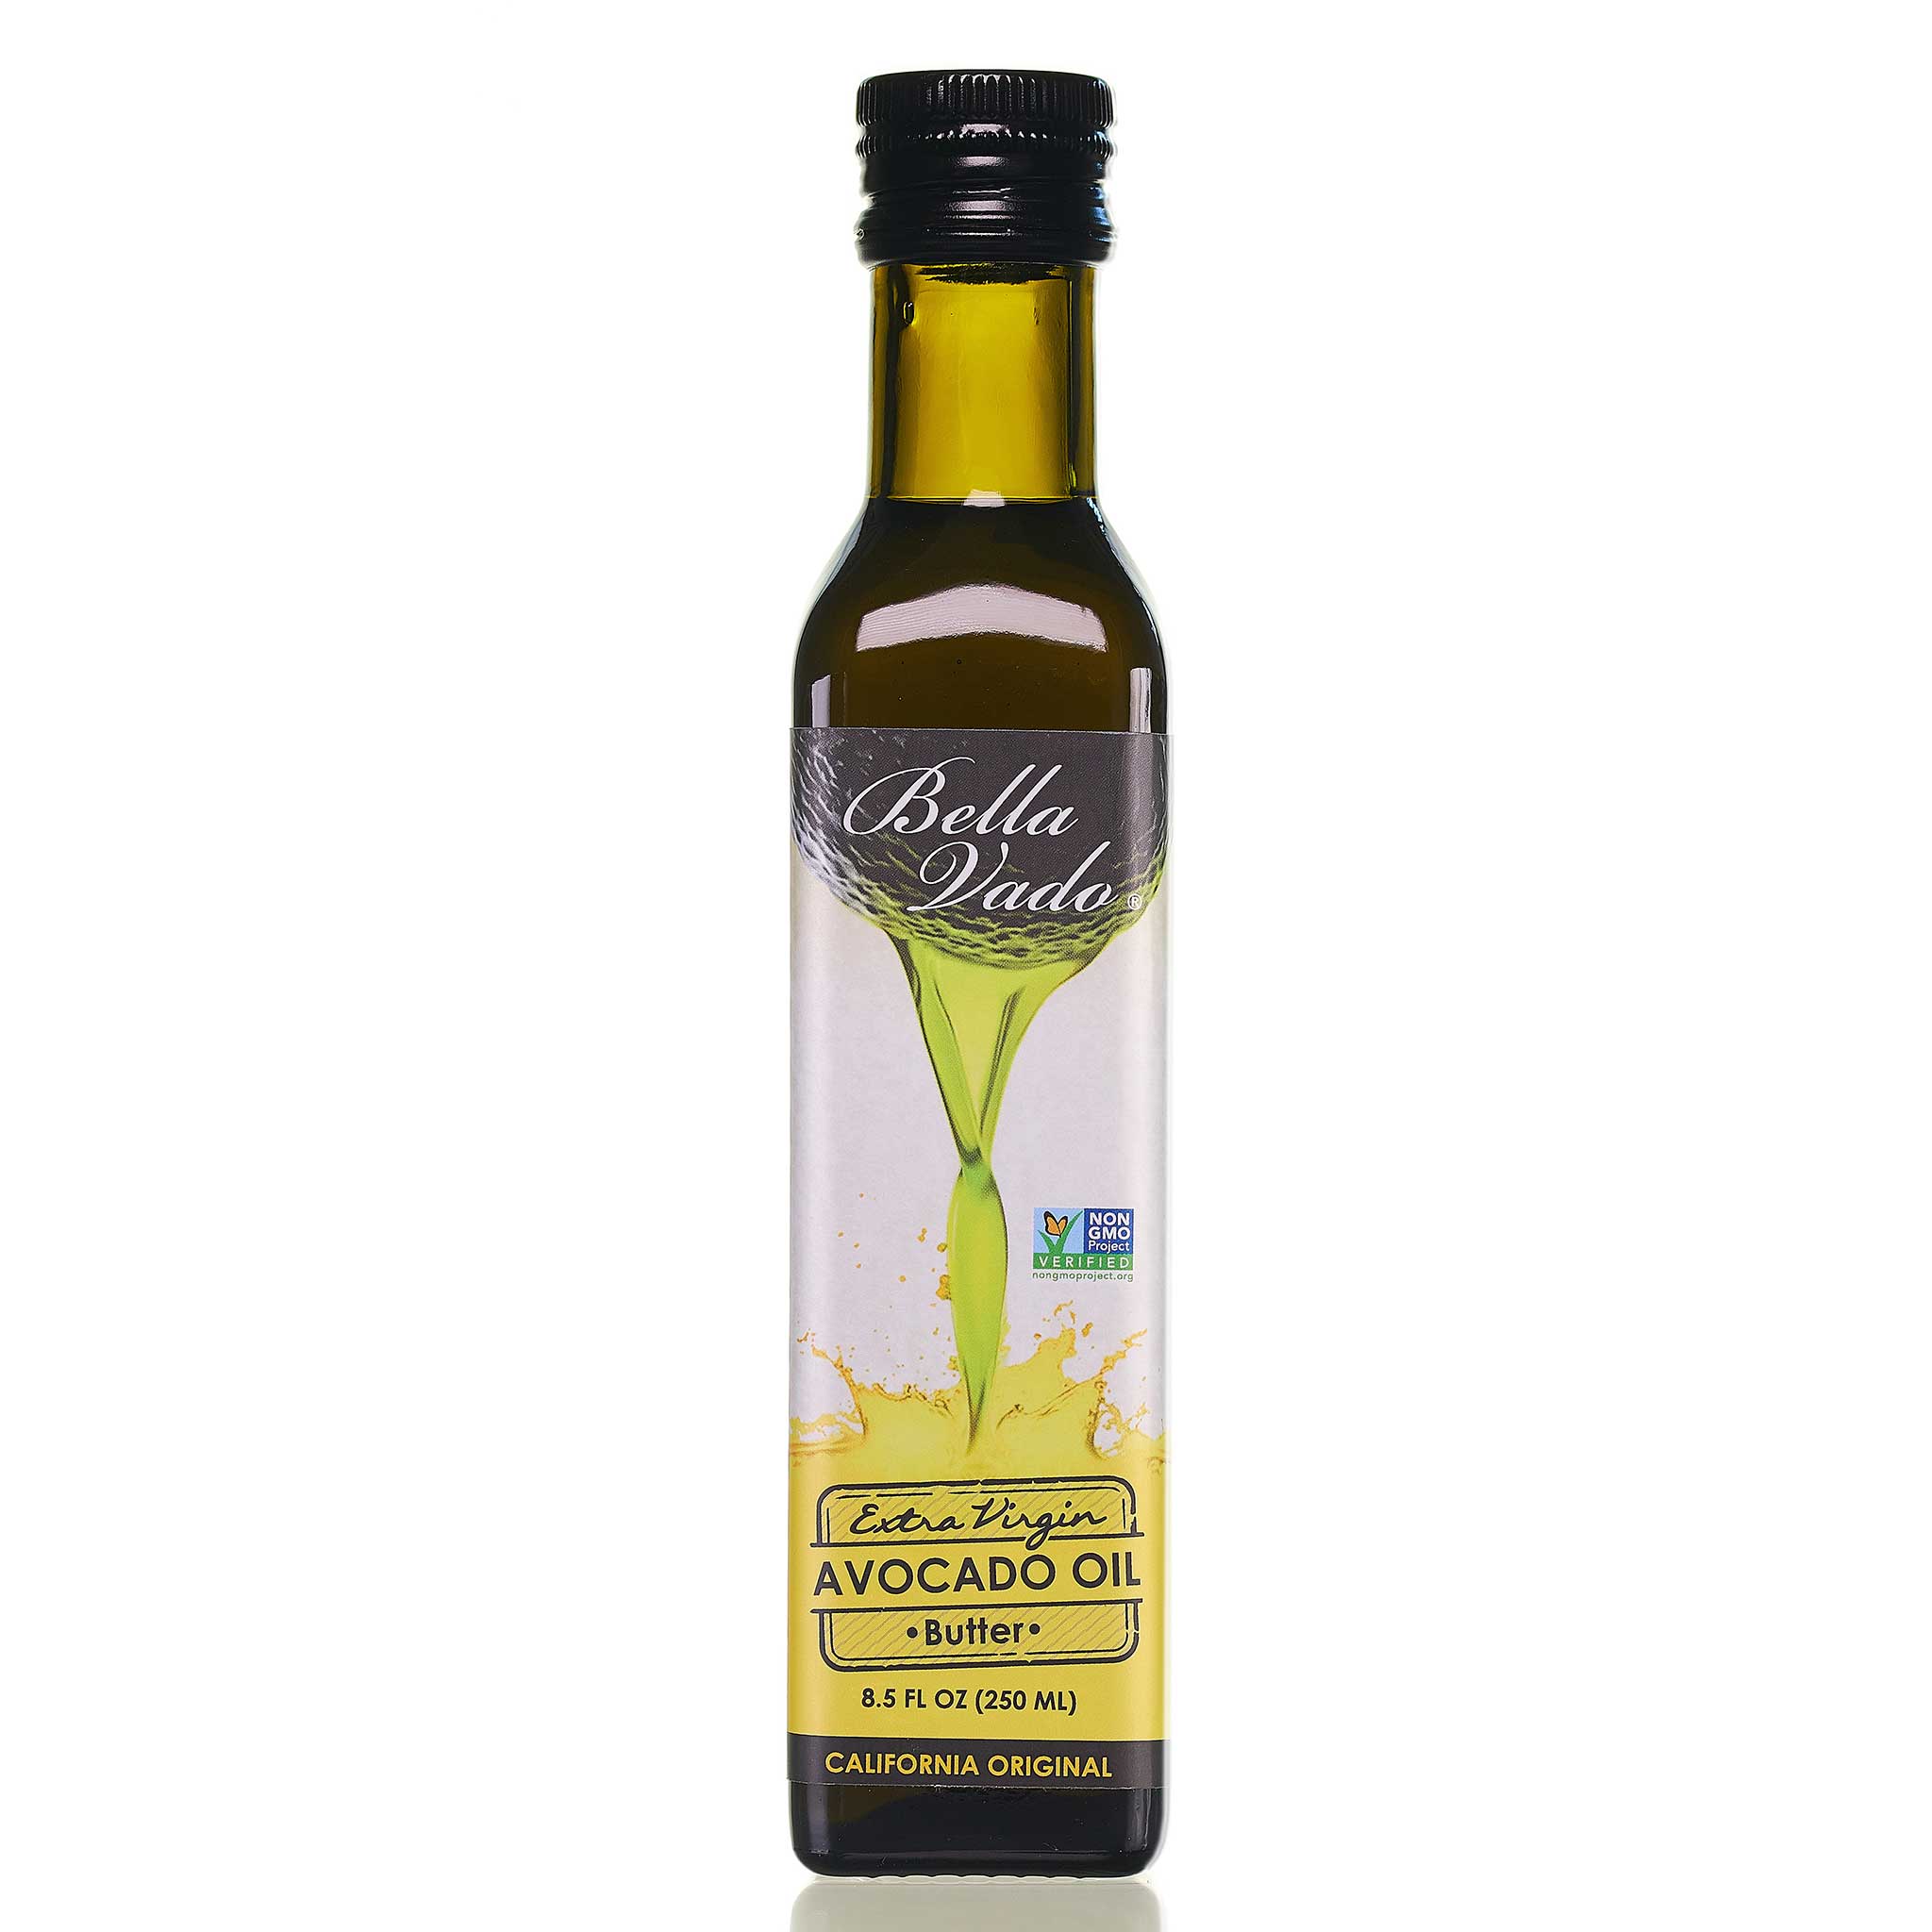 Extra Virgin Avocado Oil (250 ml)